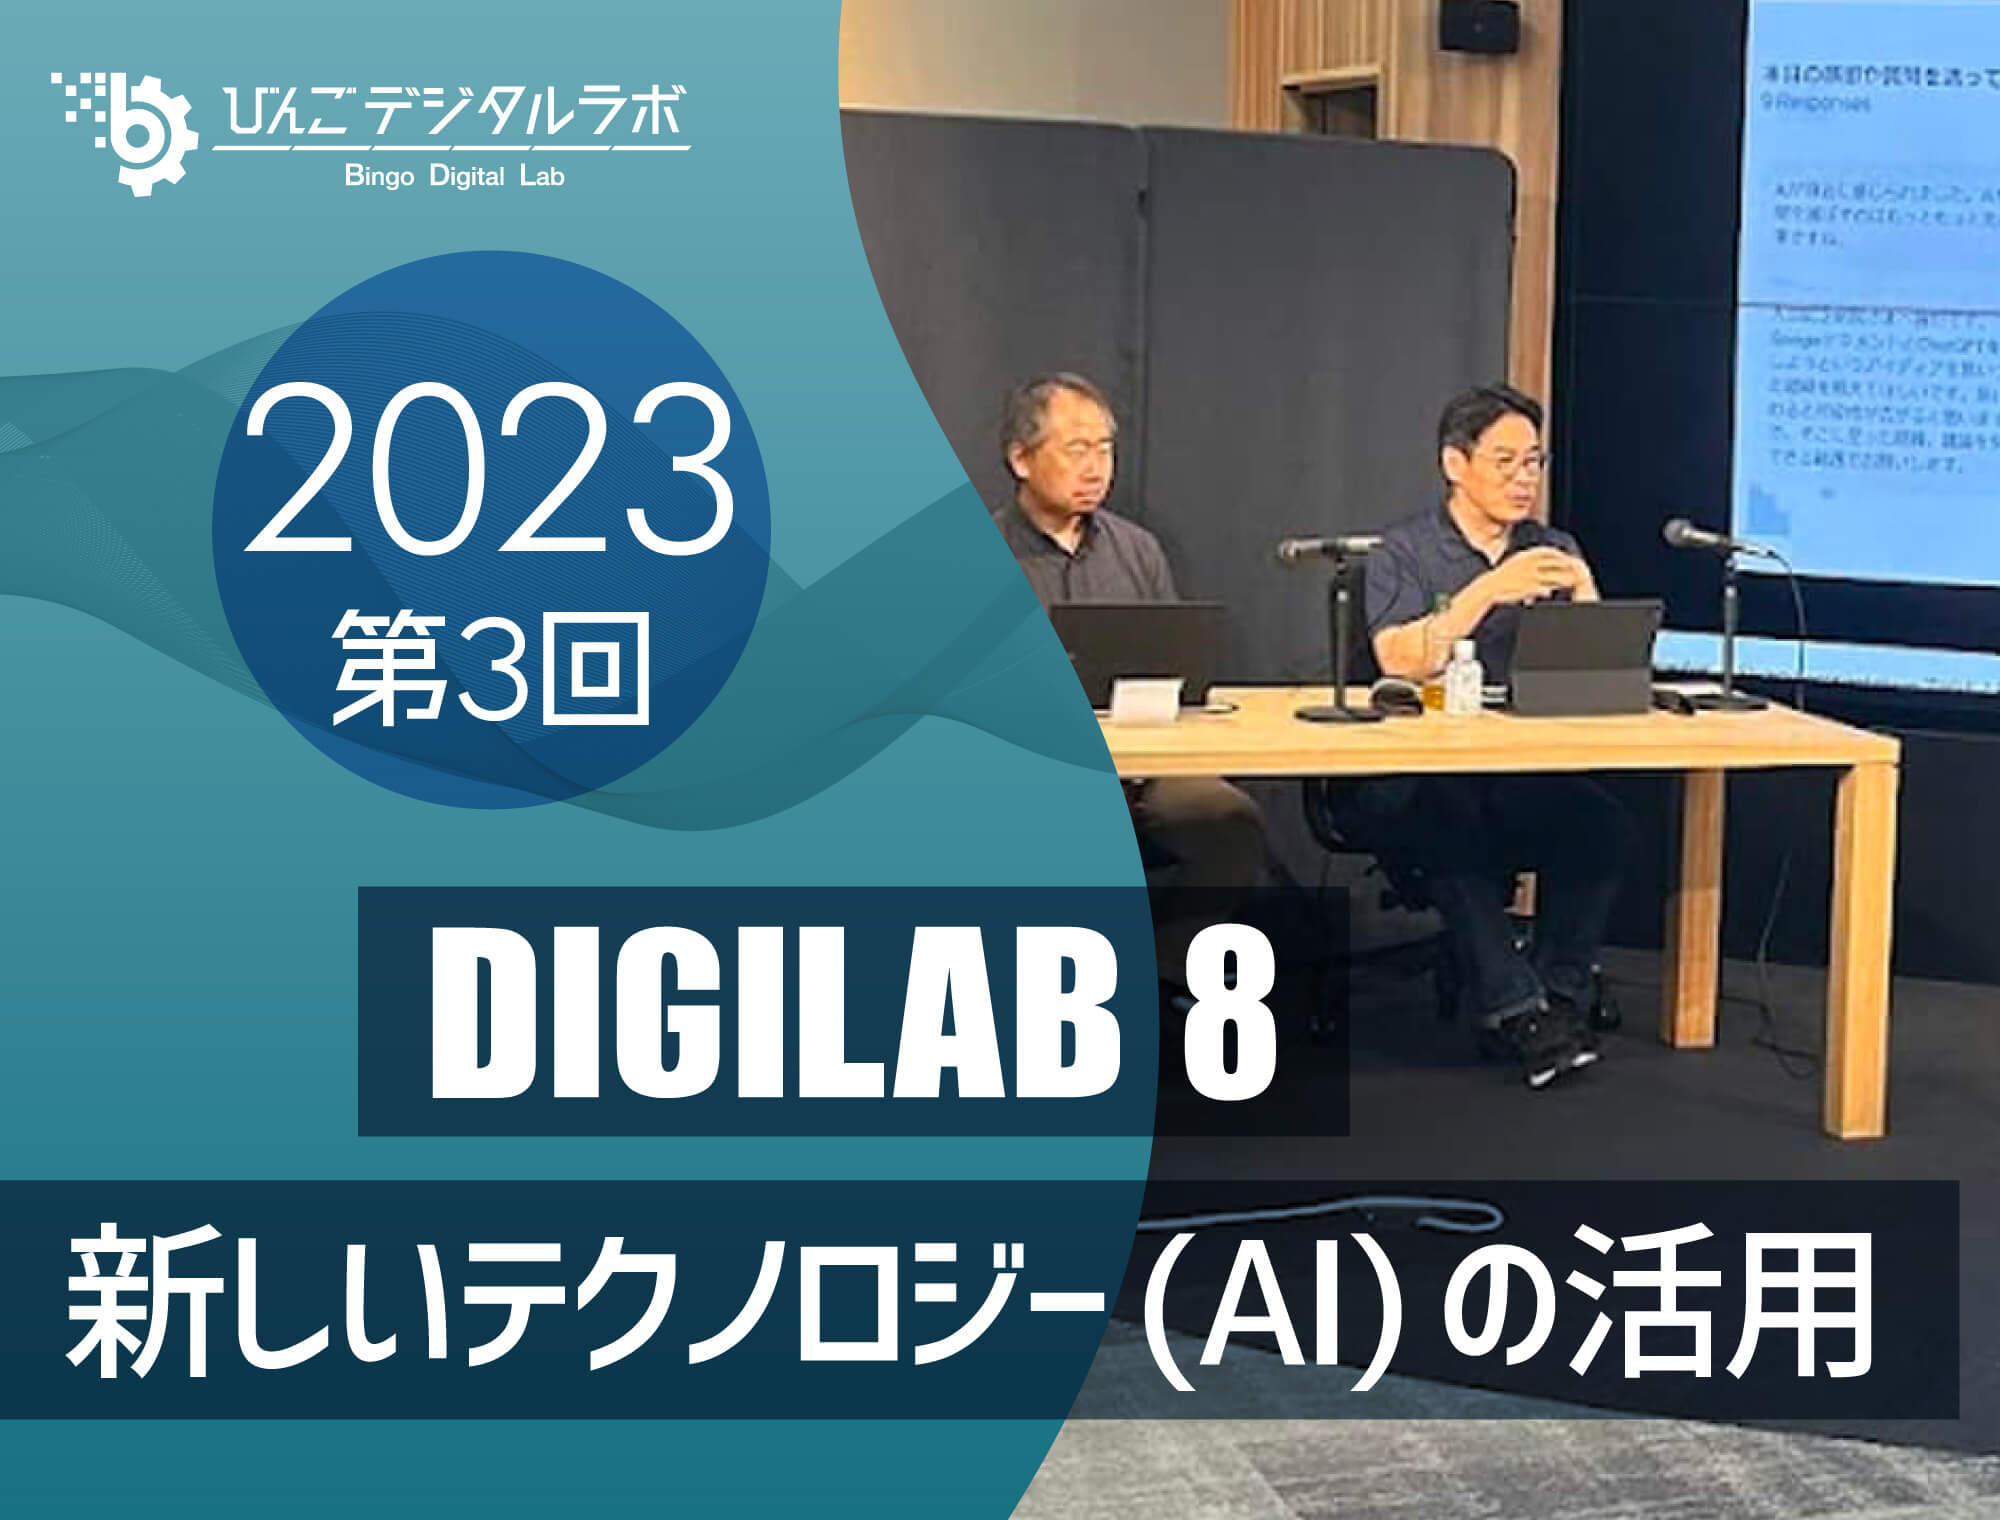 2023年度 第3回びんごデジタルラボイベント『DIGILAB8』を実施しました ～「新しいテクノロジー(AI)の活用」～